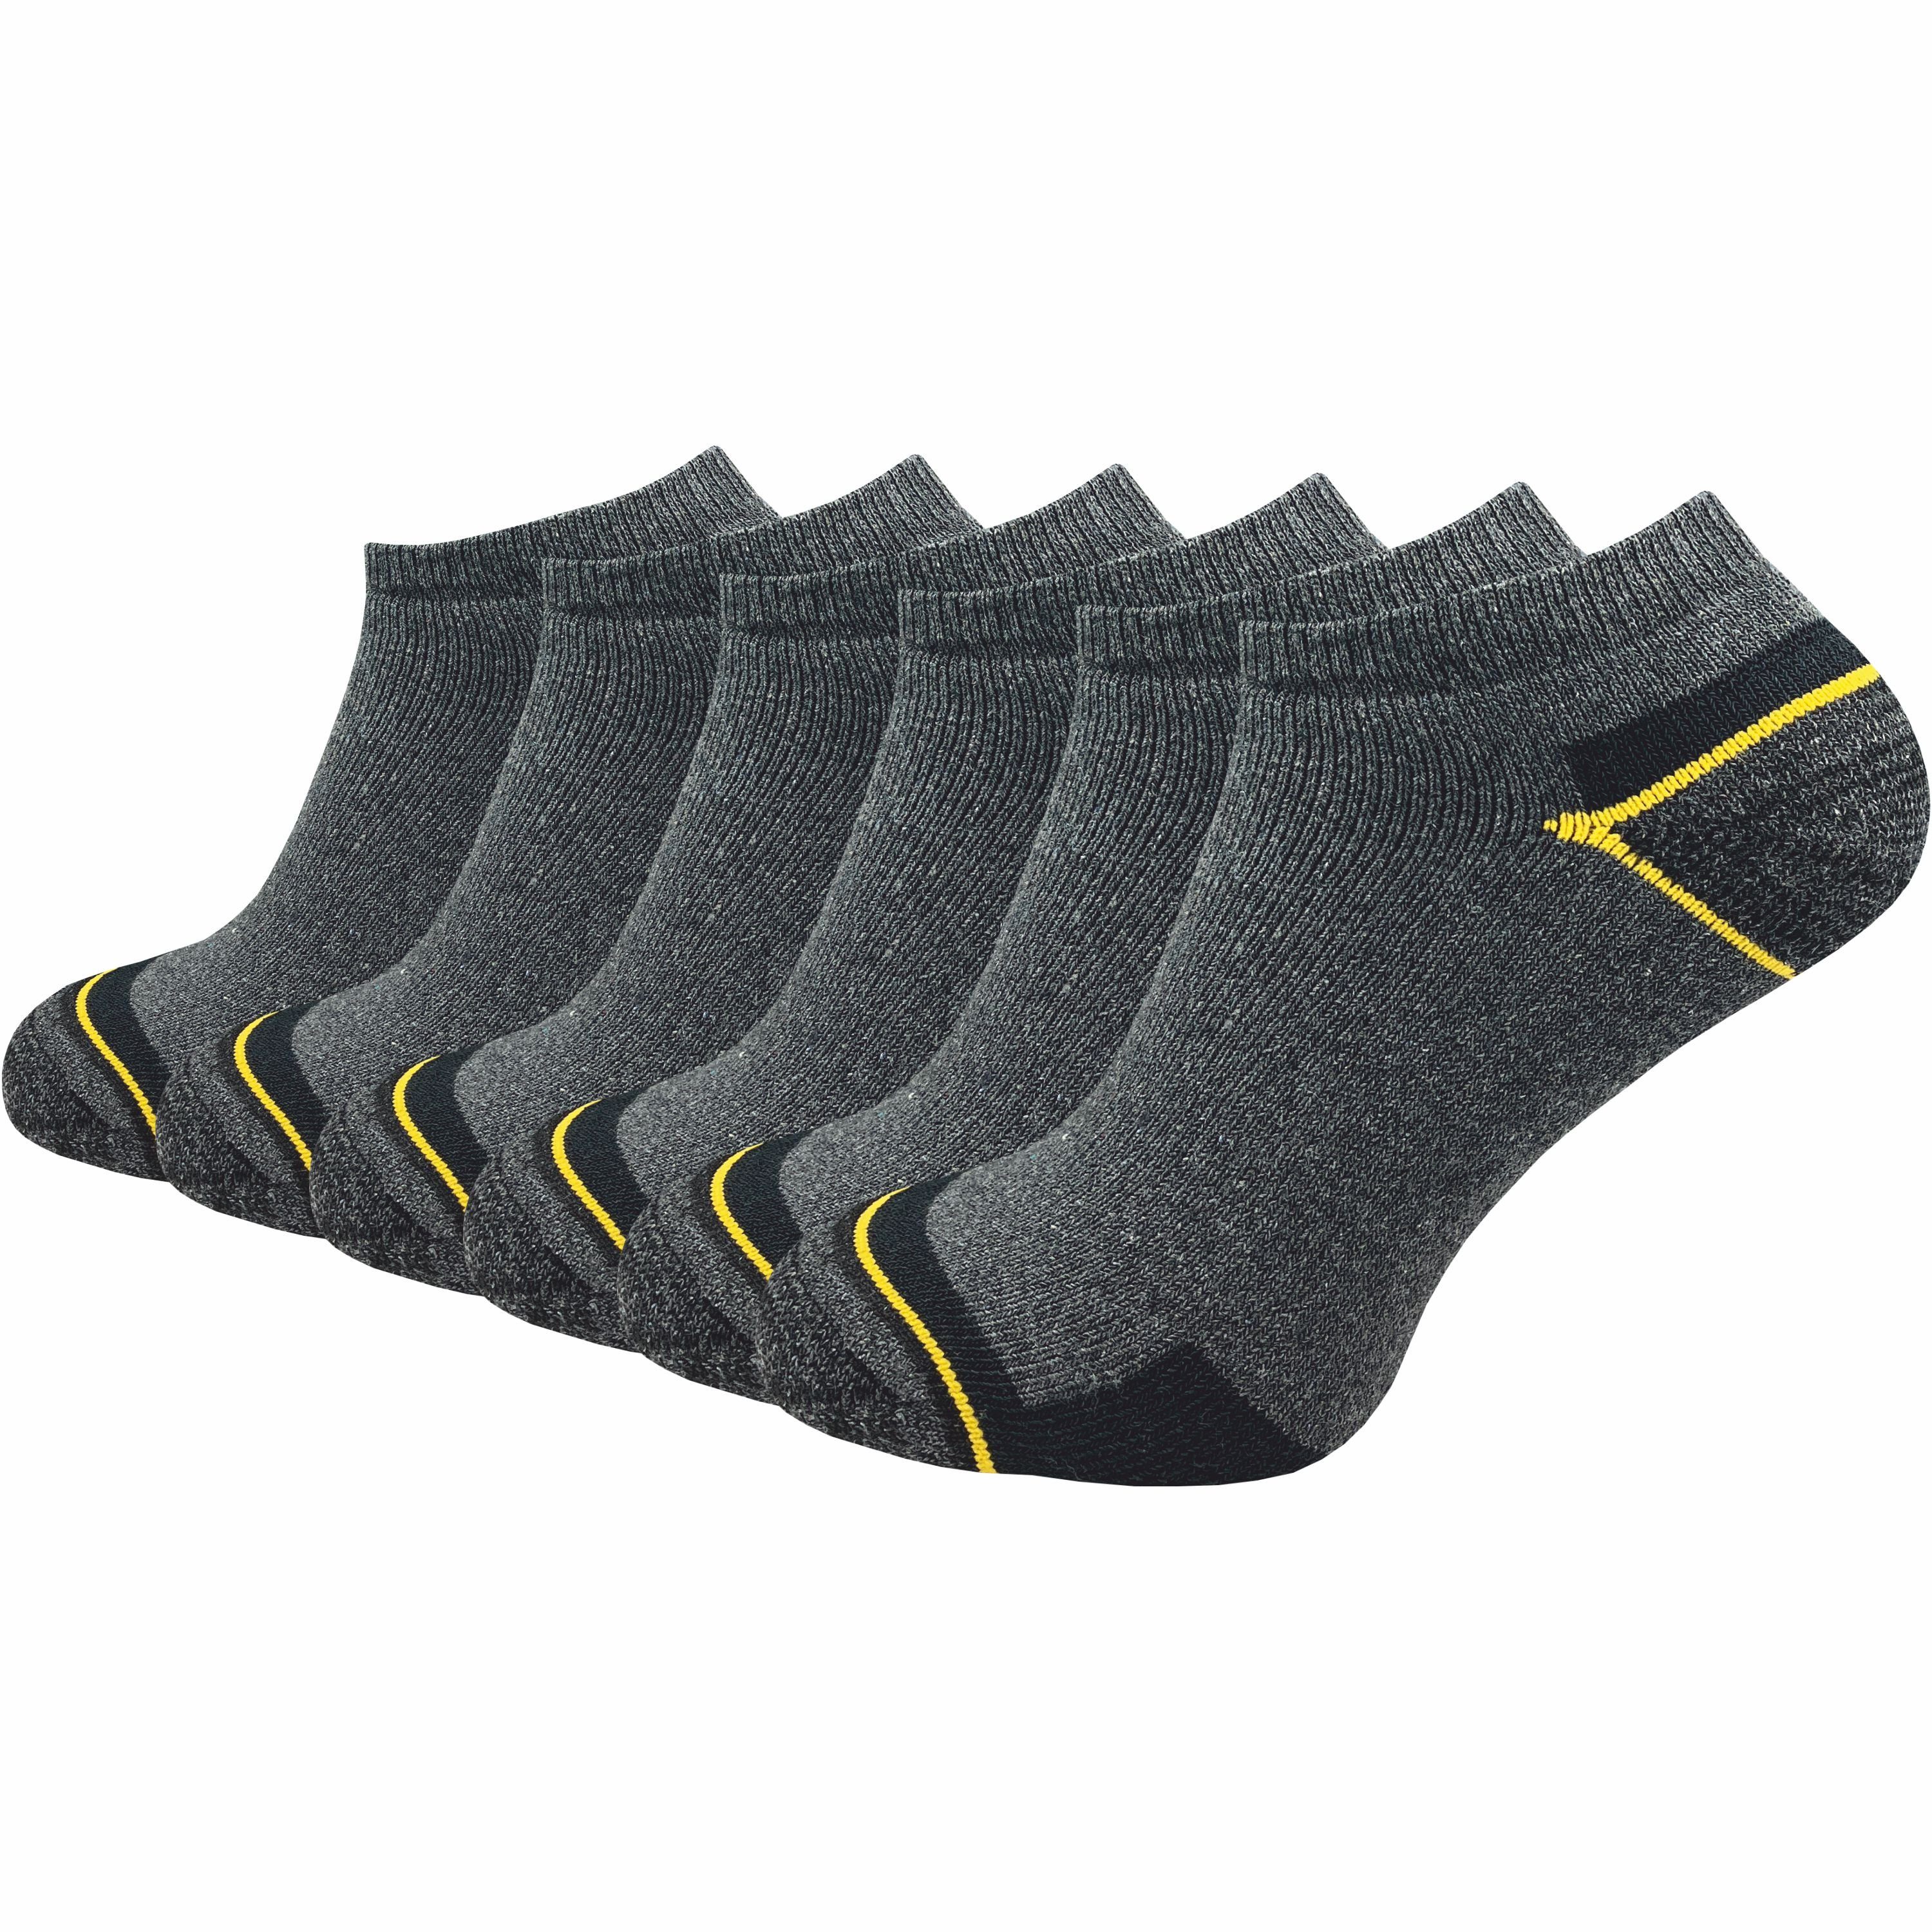 GAWILO Arbeitssocken - Sneaker - für Herren mit atmungsaktiver Baumwolle gegen Schweißfüße (6 Paar) Ideal für Sicherheitsschuhe oder Arbeitsschuhe - Arbeits Sneaker